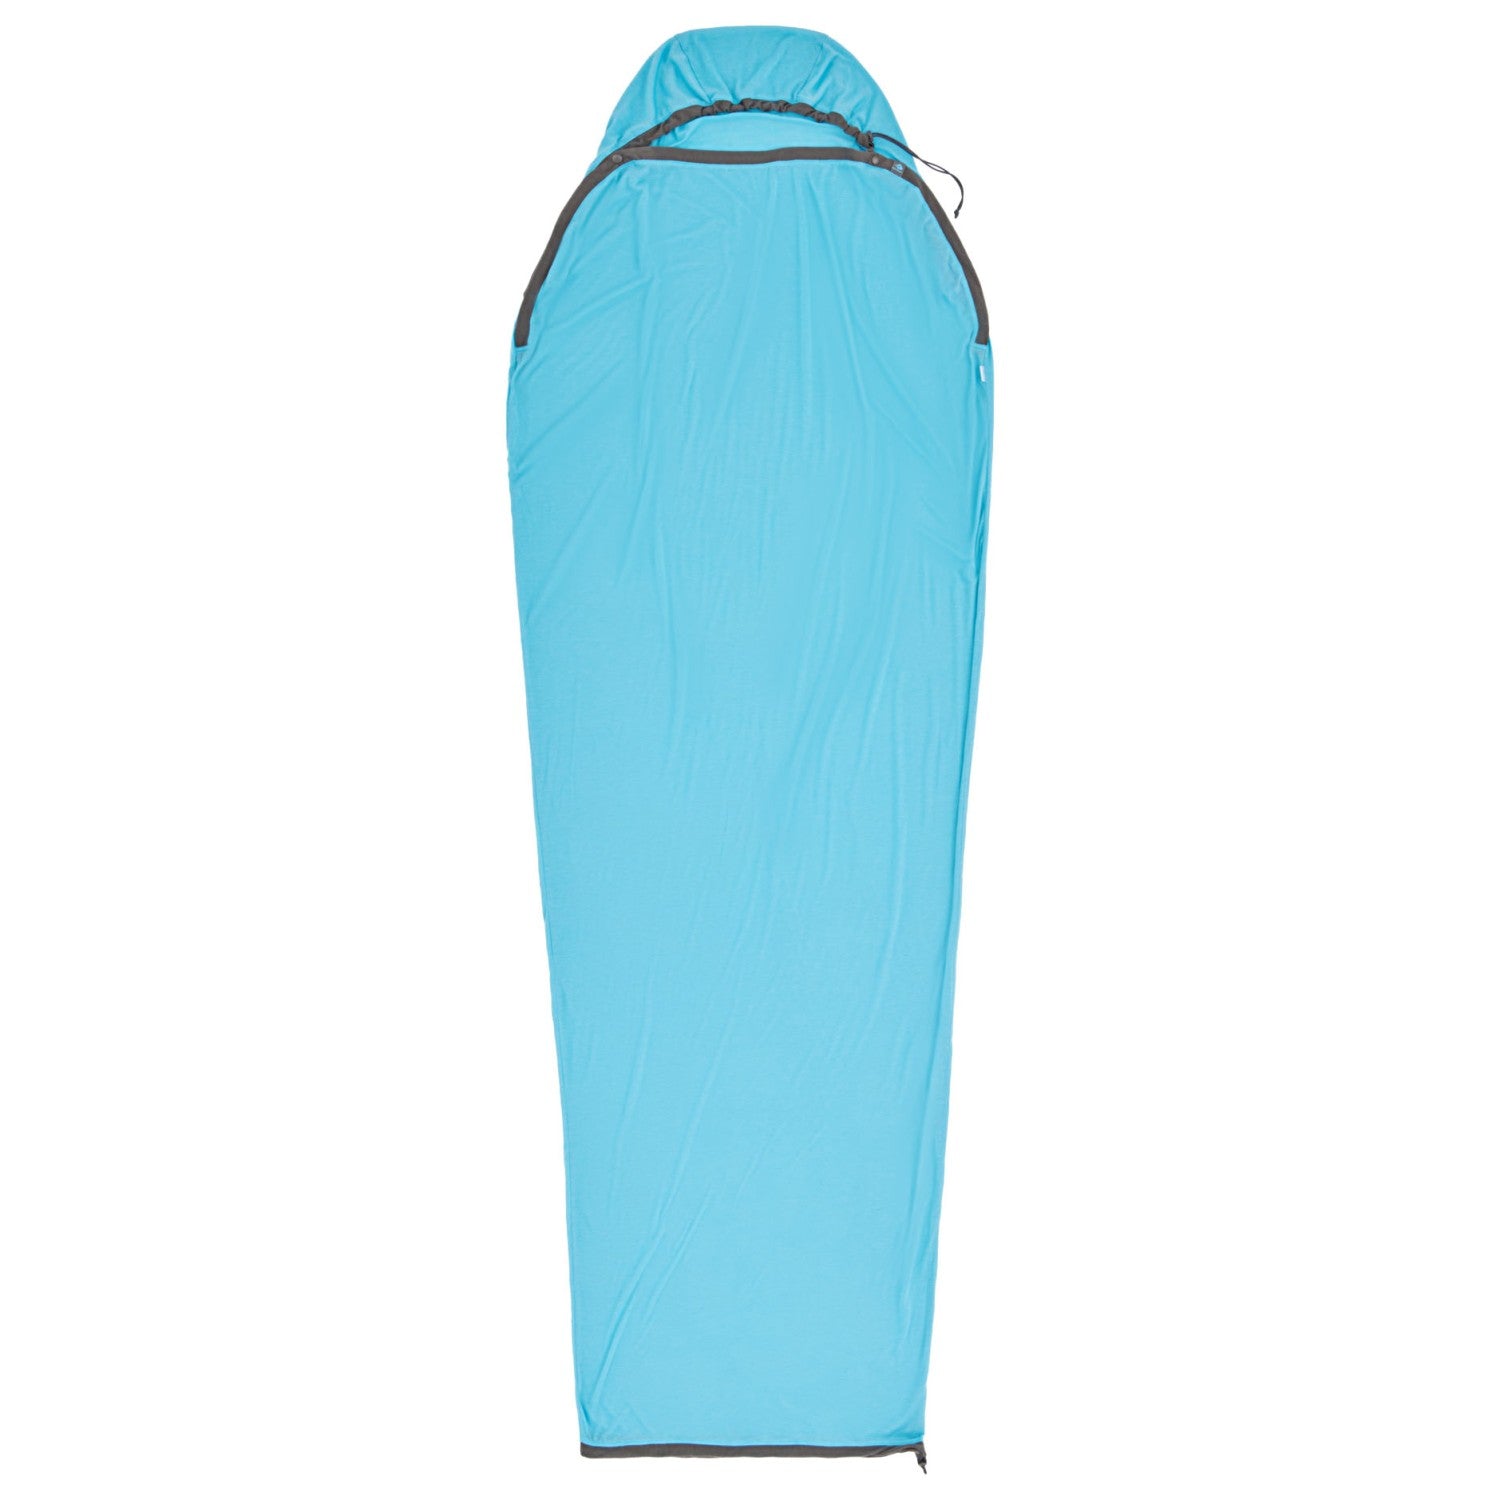 Sea to Summit Breeze Coolmax Mummy Sleeping Bag Liner